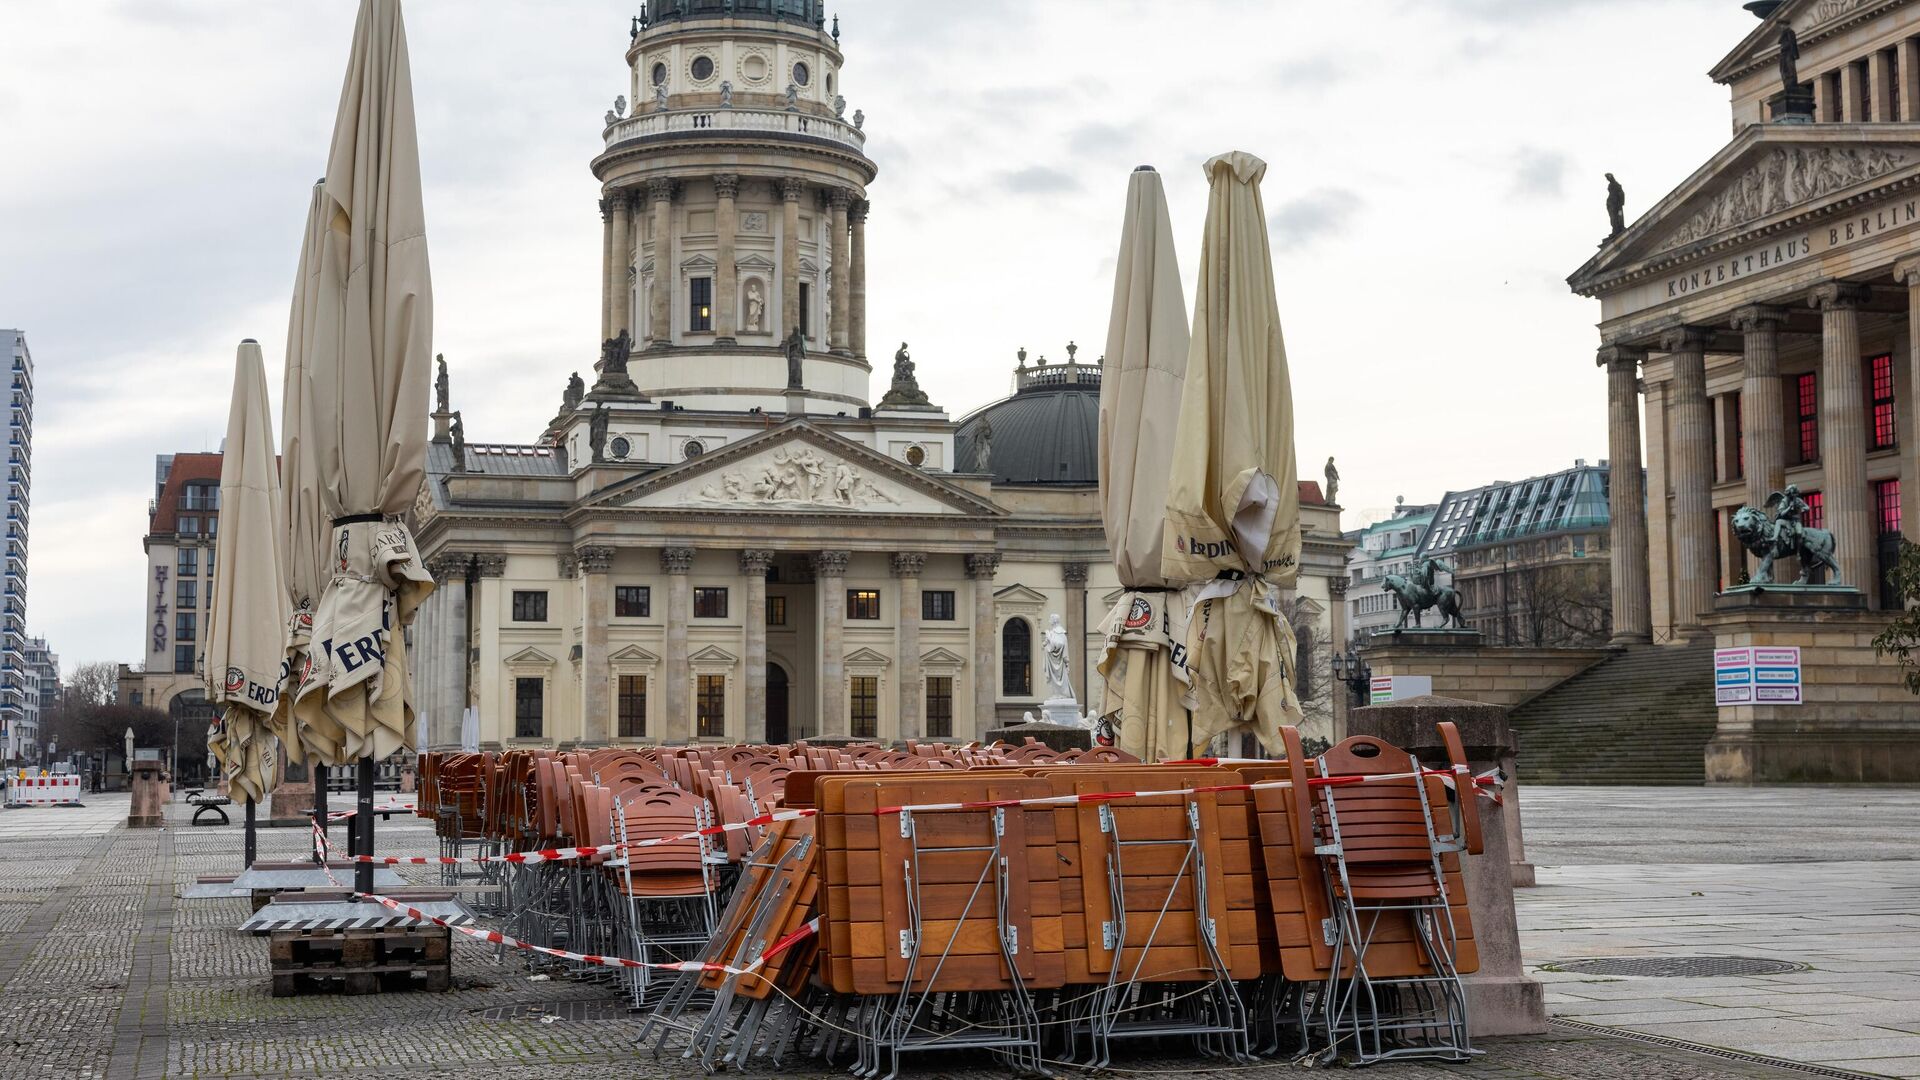 Столы и стулья возле кафе на площади Жандарменмаркт в Берлине - РИА Новости, 1920, 15.01.2021